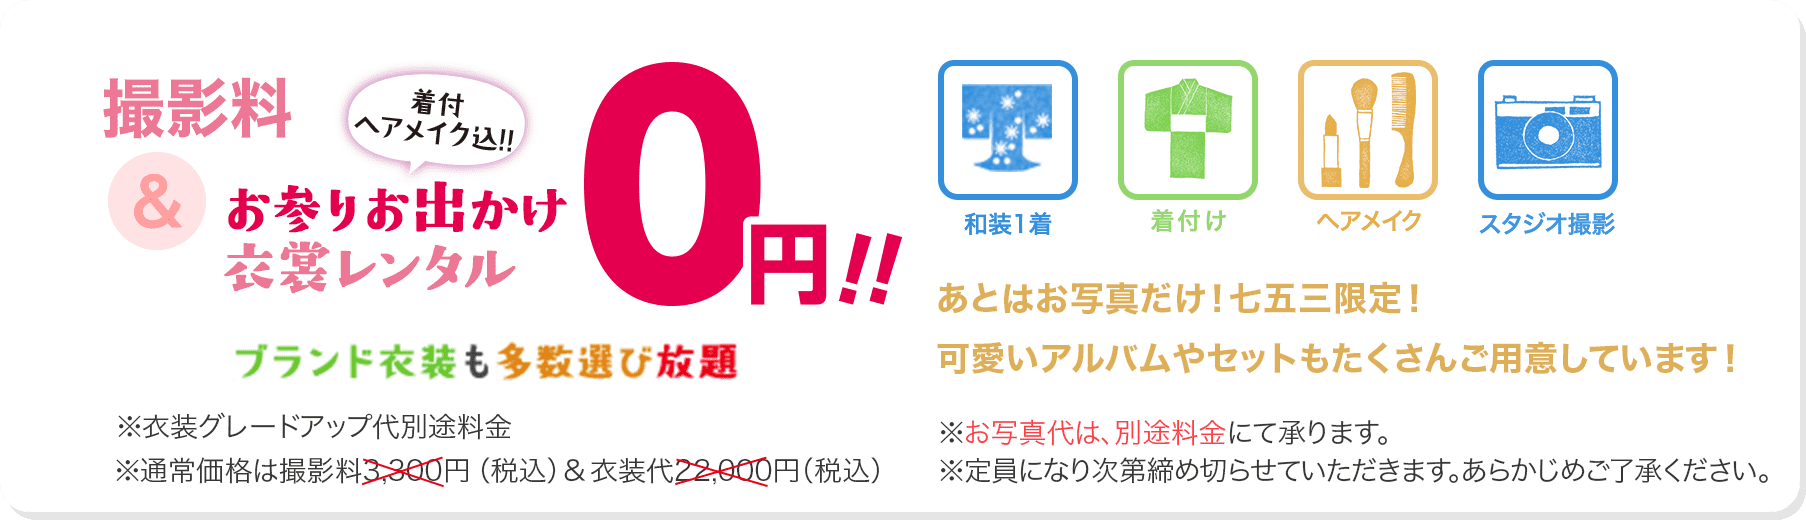 七五三キャンペーン! 撮影料+秋のお出かけ衣装レンタル(着付・ヘアメイク込) 0円!!